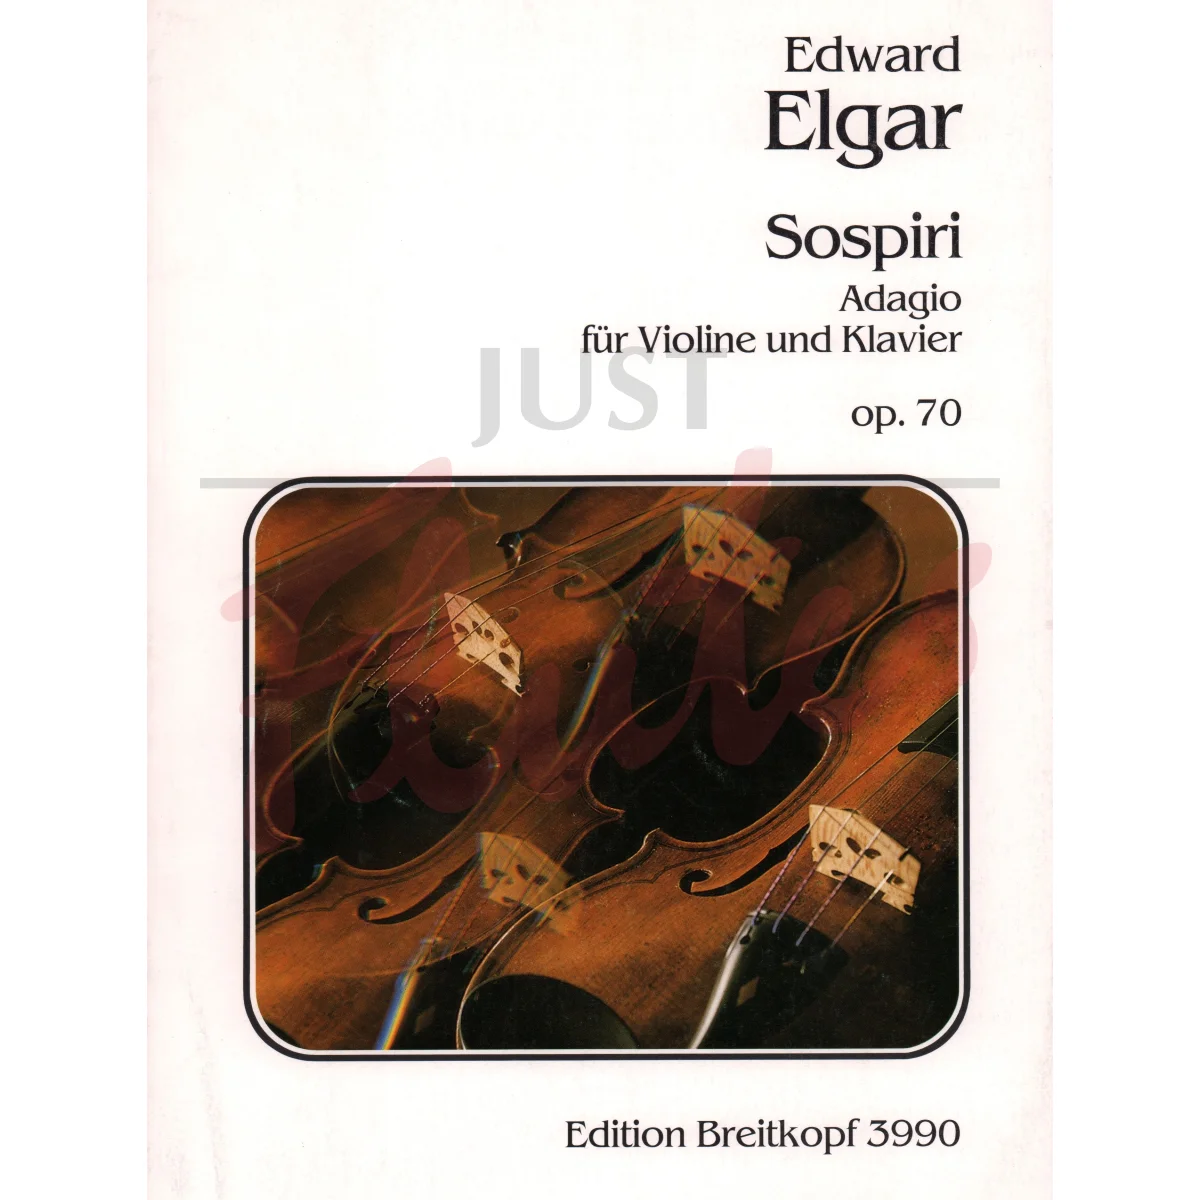 Sospiri - Adagio for Violin and Piano